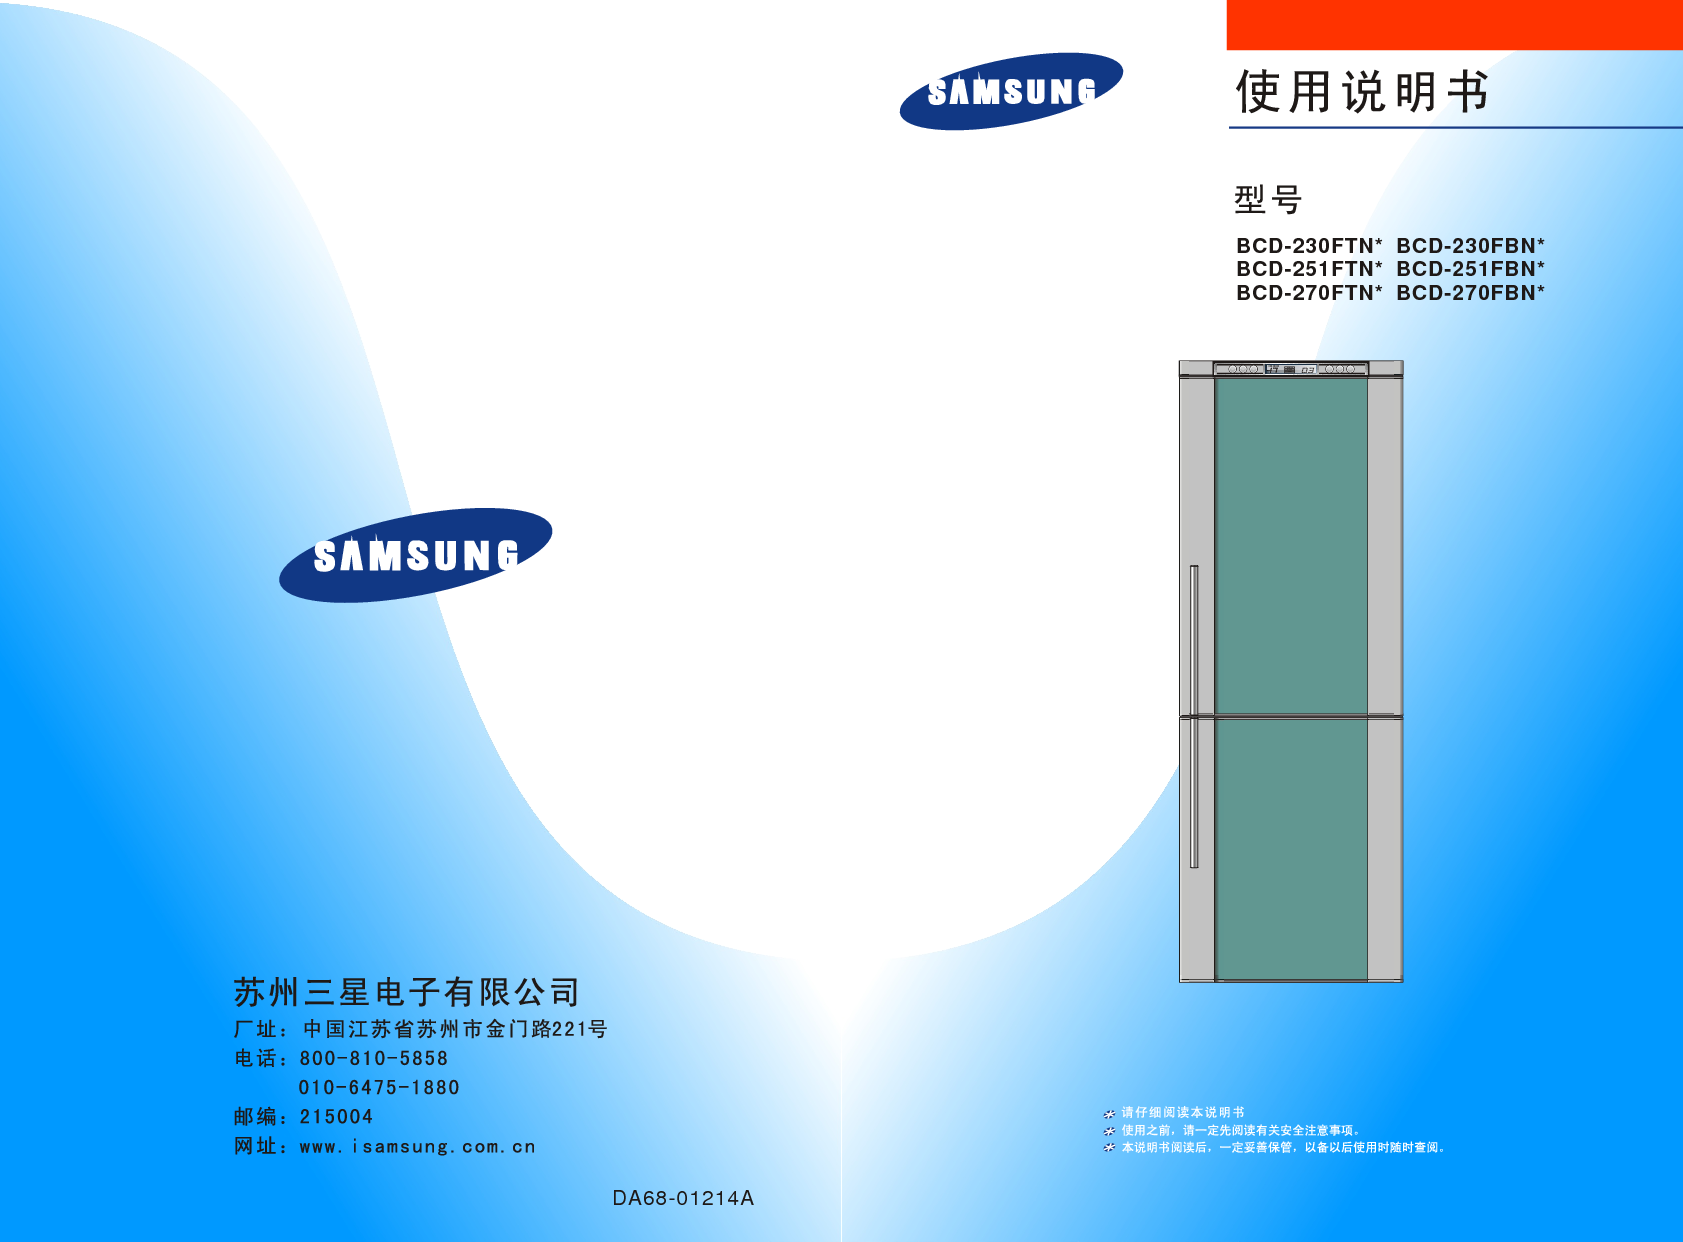 三星 Samsung BCD-230FBN* 使用说明书 封面